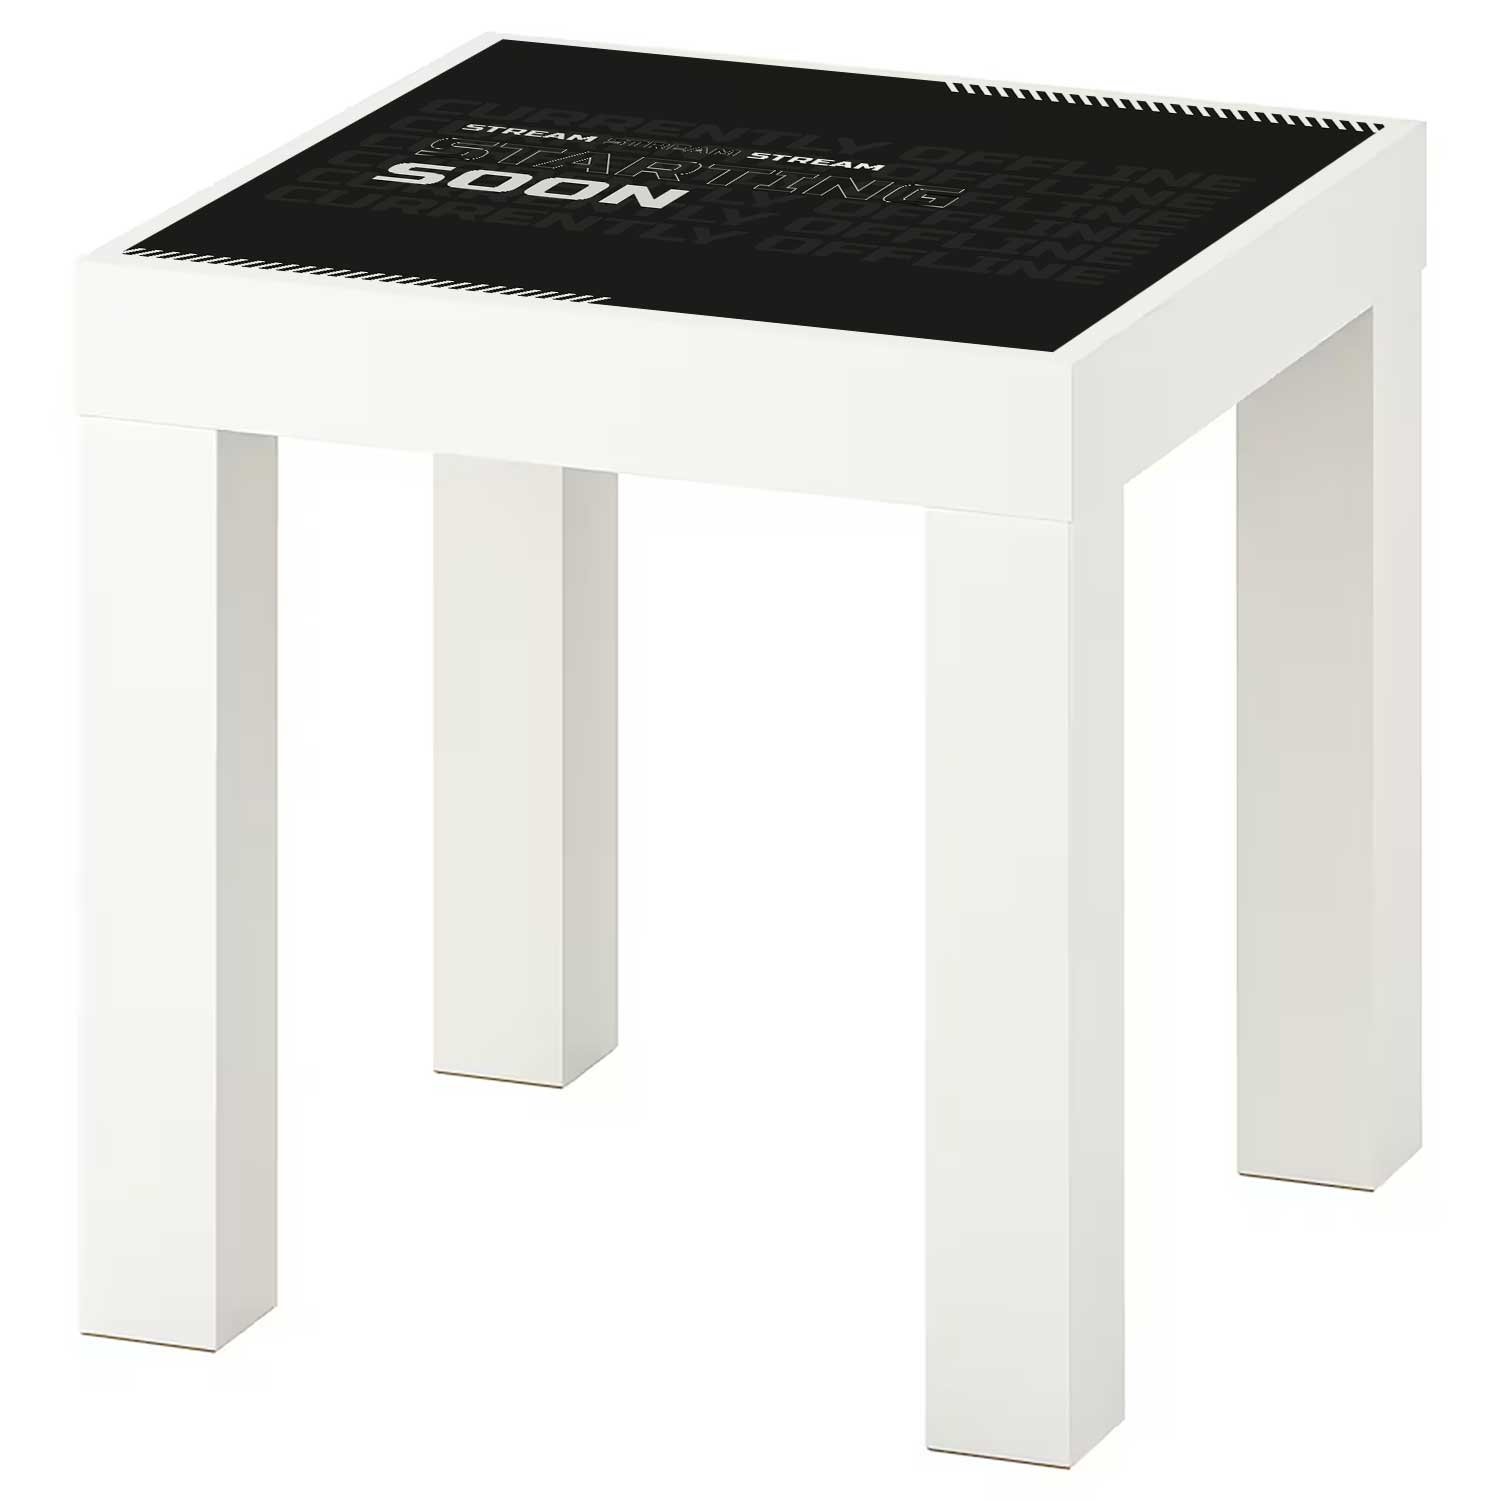 Möbelfolie für IKEA Lack Tisch 35x35 cm 'Stream Starting Soon'